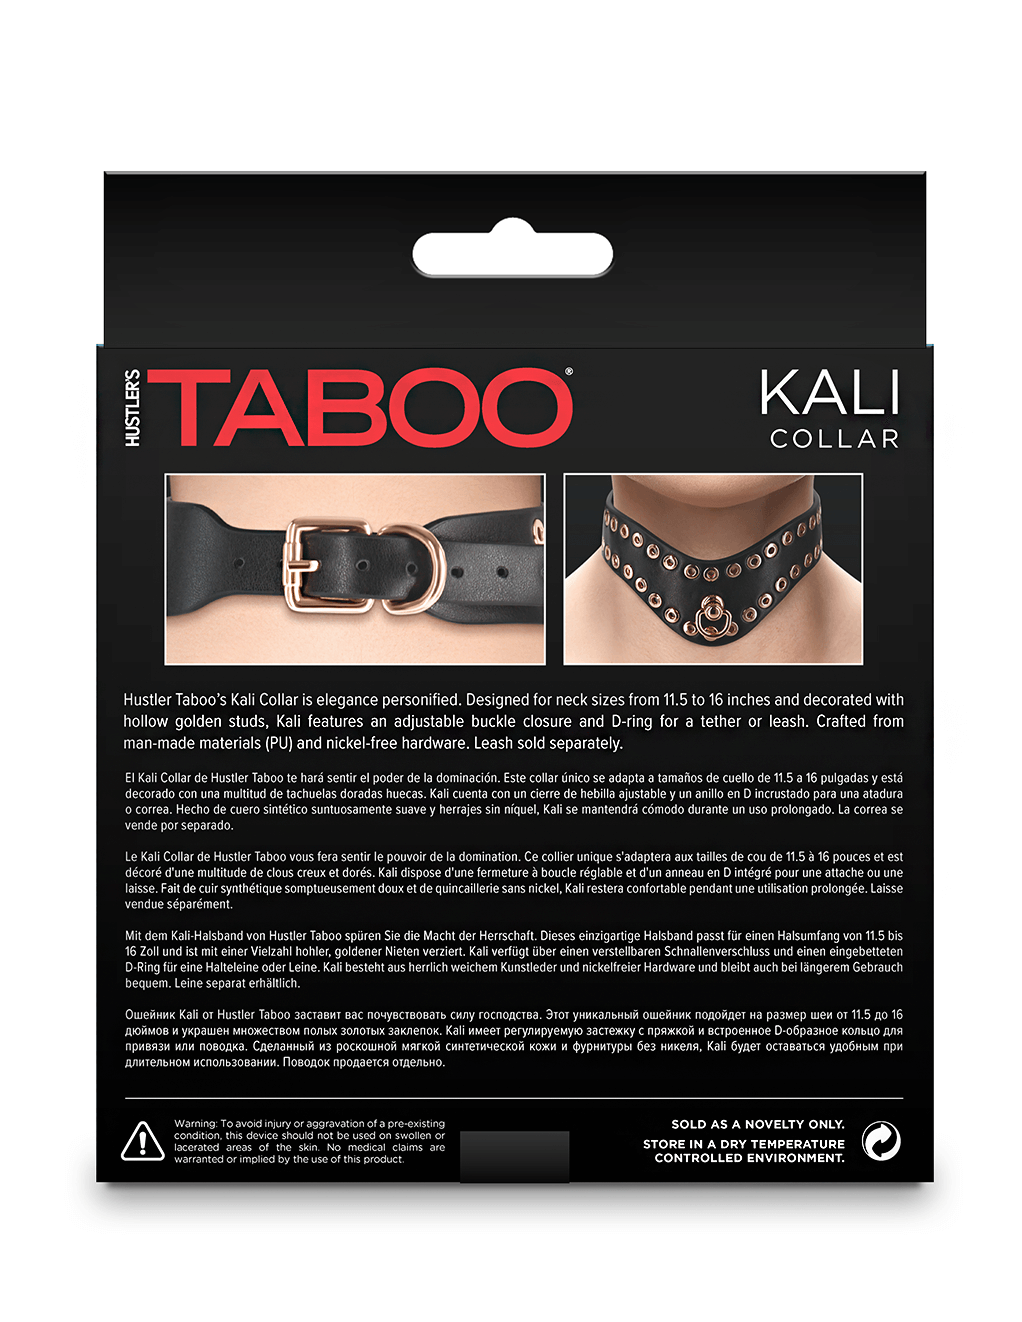 Taboo Kali Collar - Box - Back